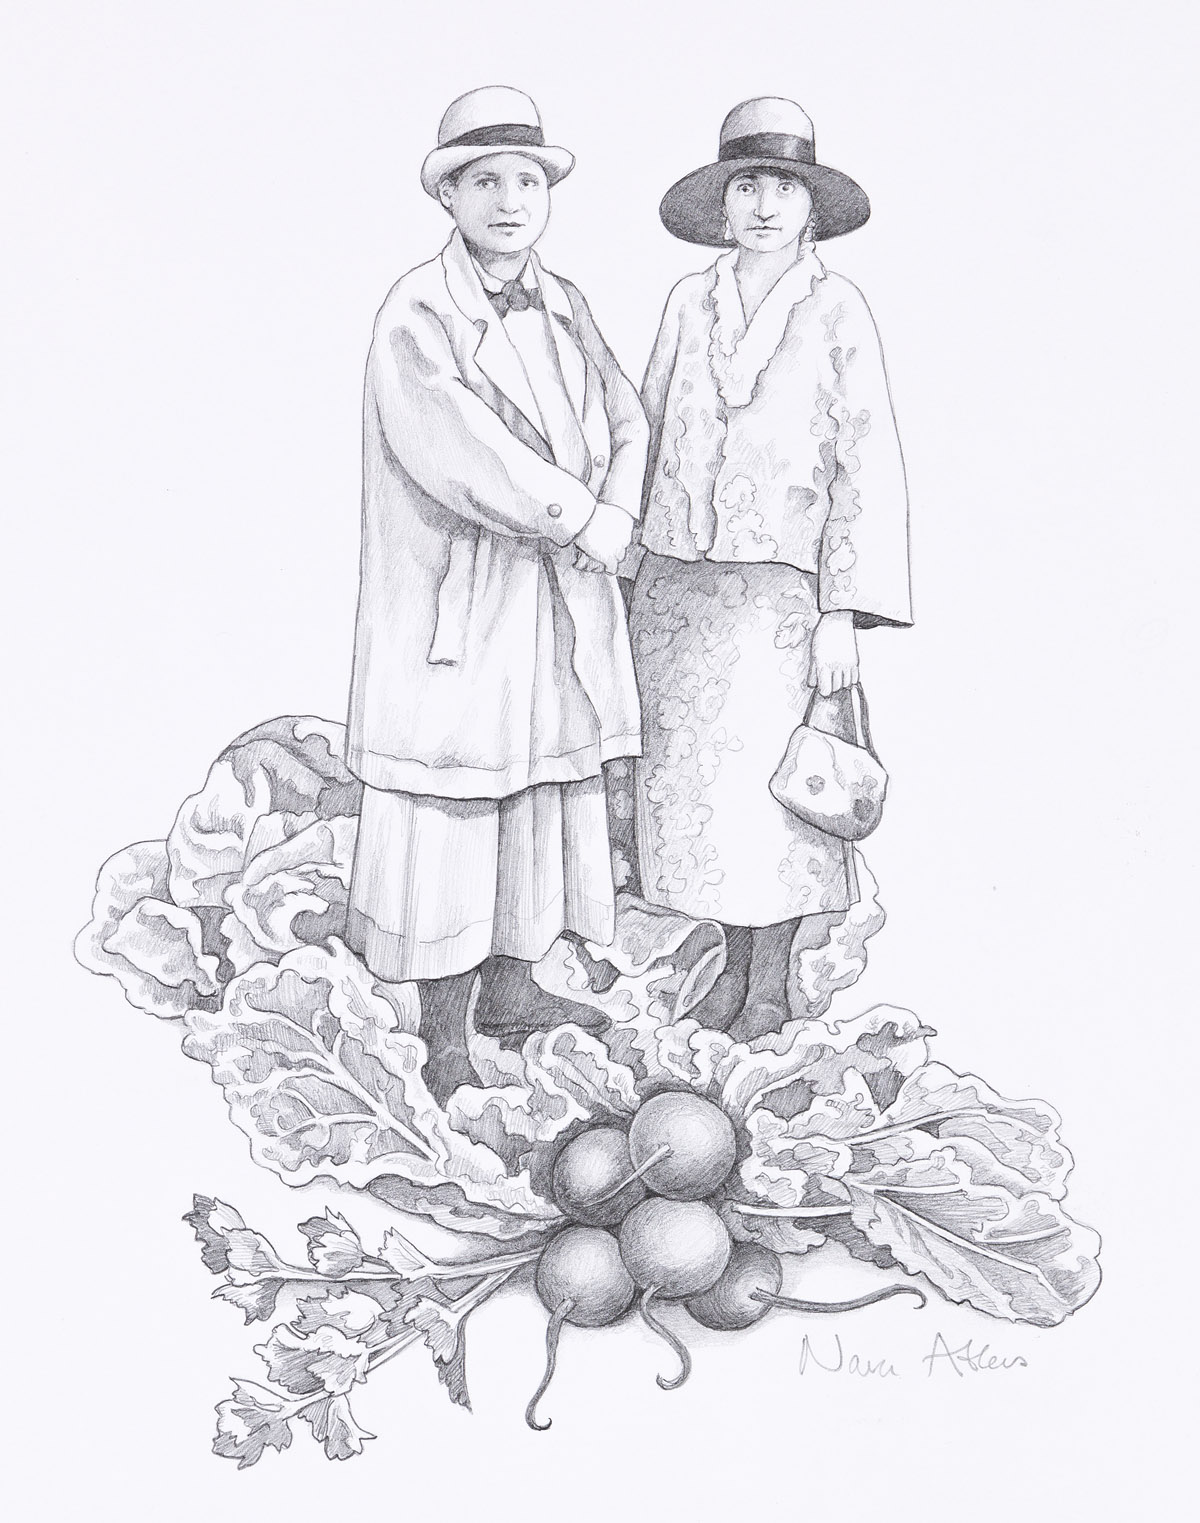 NAVA ATLAS (1955-) Gertrude and Alice in the Garden. [FOOD / GERTRUDE STEIN]